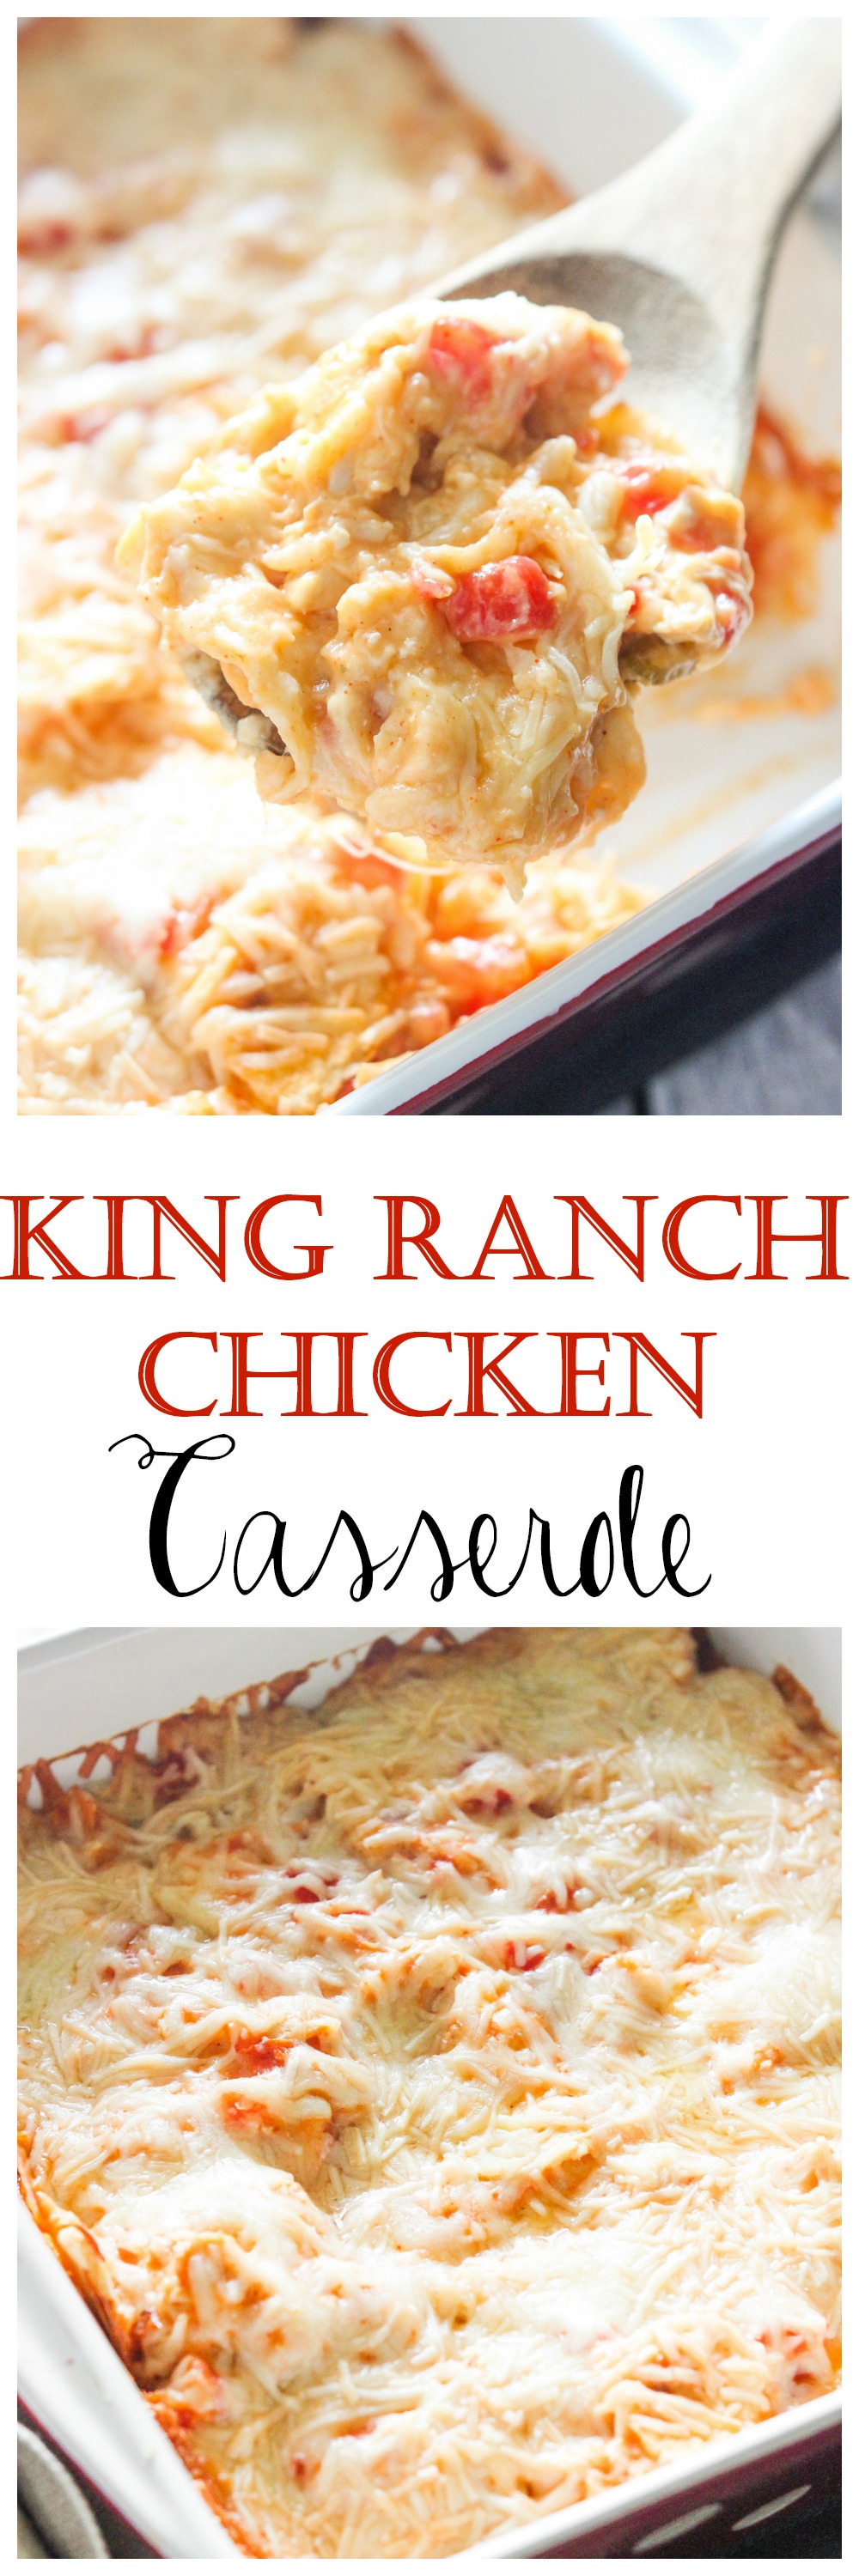 King Ranch Chicken Casserole